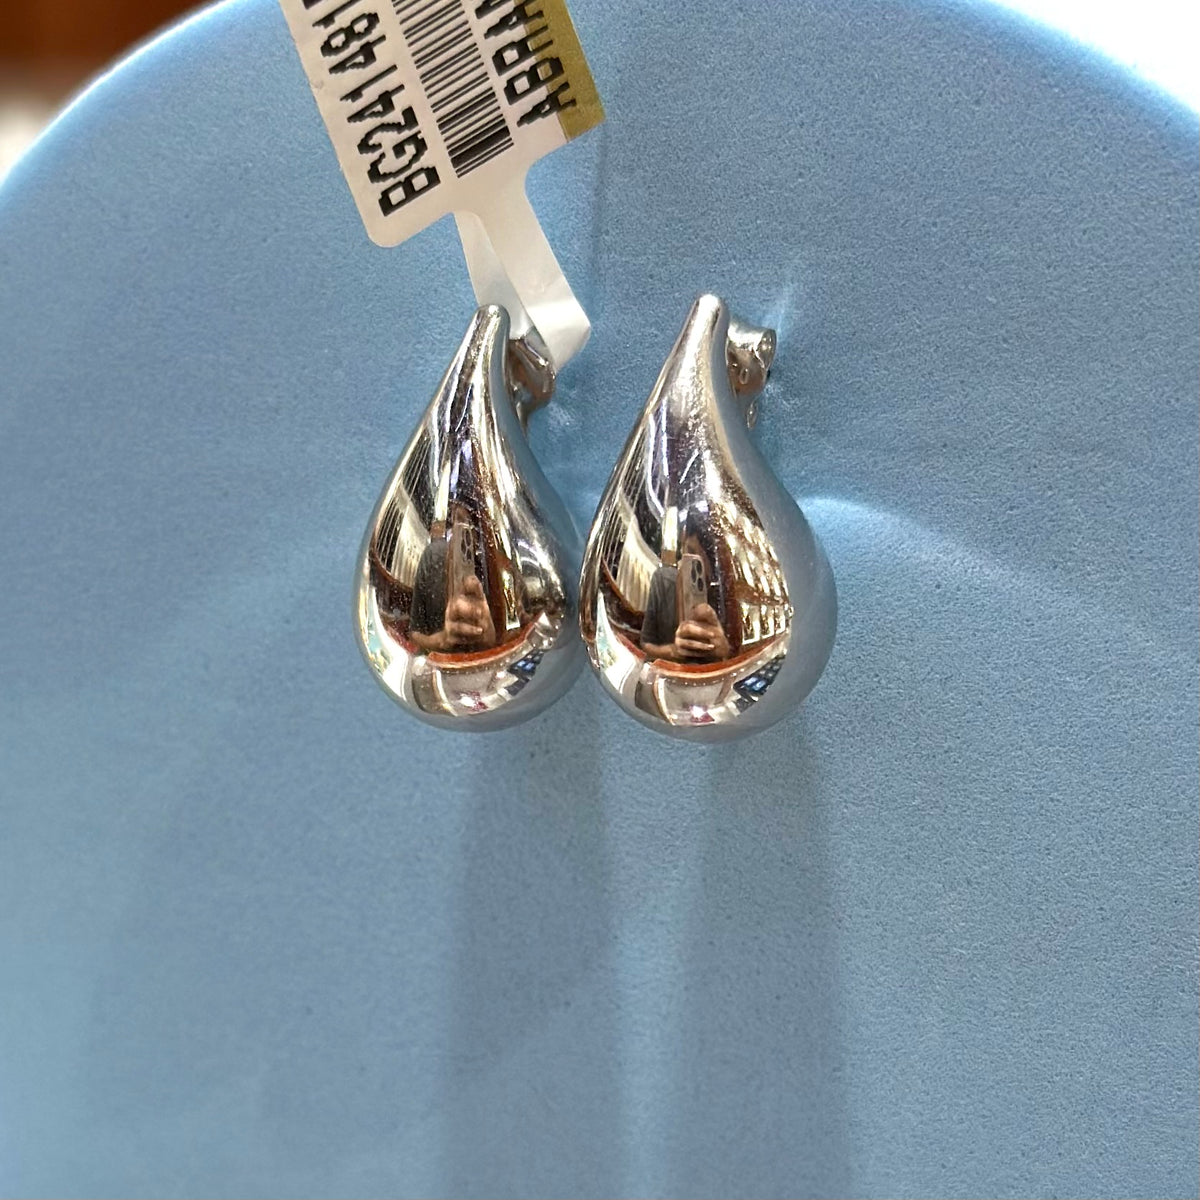 Real 18K White Gold - Teardrop Small Earrings